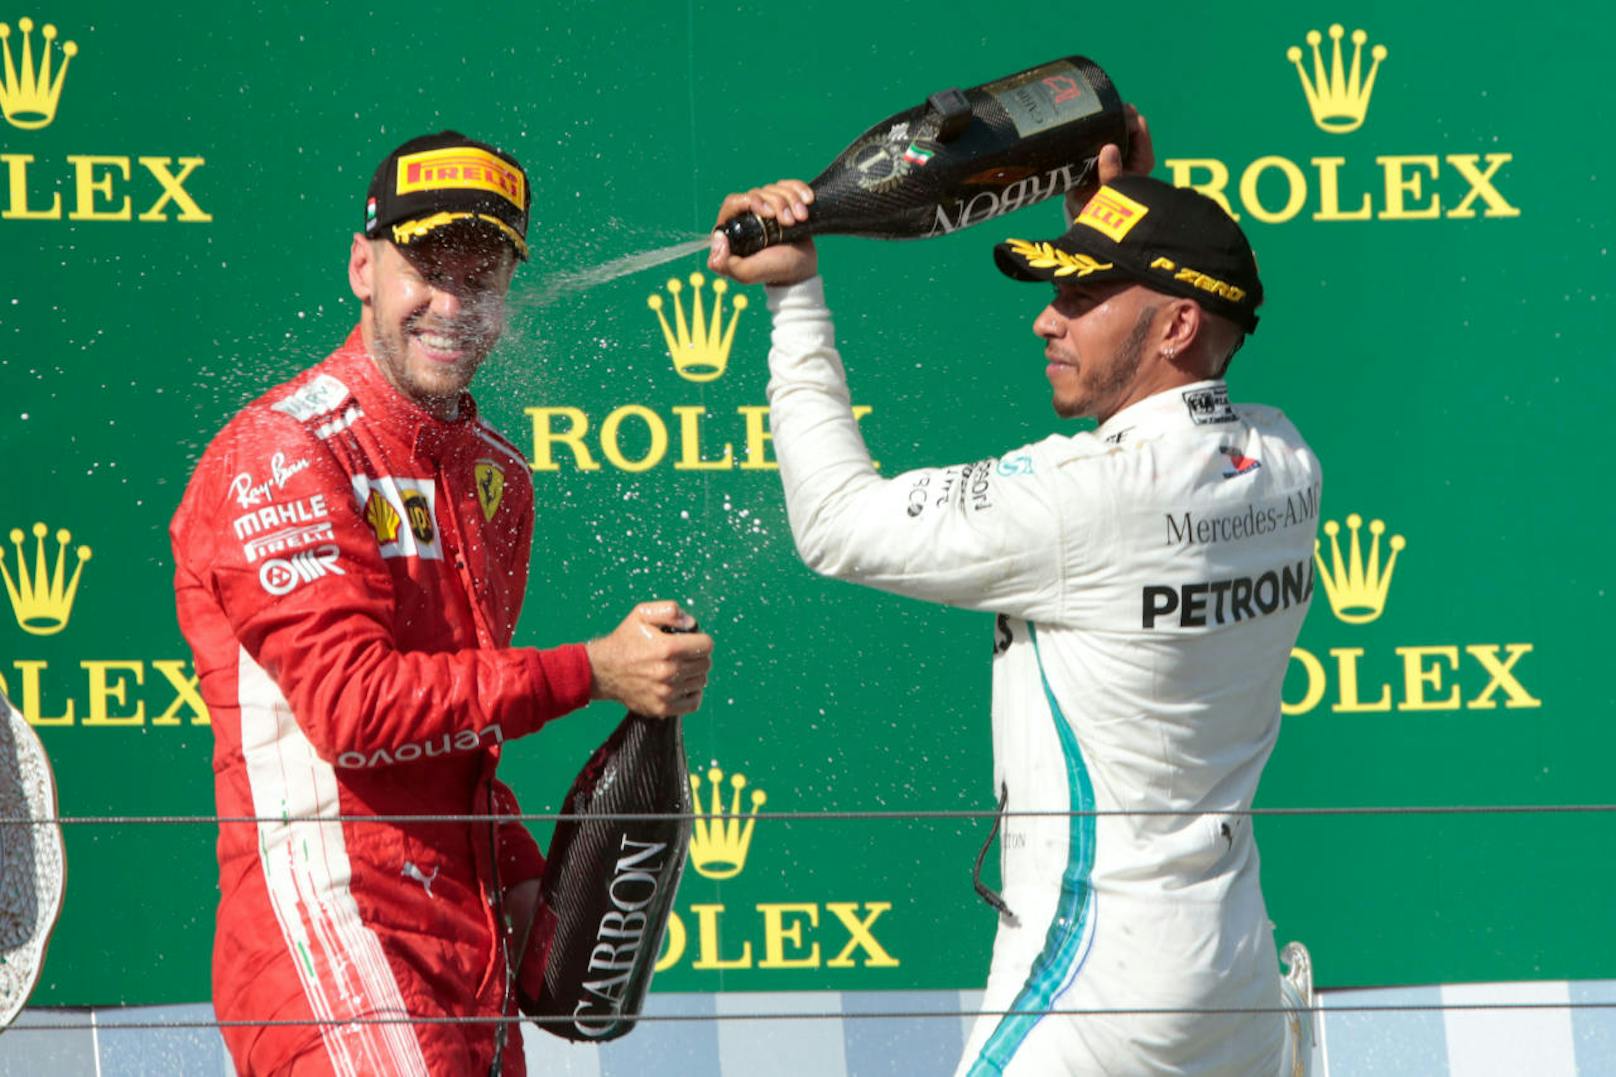 Hochspannung in der Formel 1! Bis zum letzten Rennen in Abu Dhabi kämpfen Lewis Hamilton und Sebastian Vettel um die WM. Am Ende entscheiden zwei Punkte, für wen, das dürfen Sie sich aussuchen!